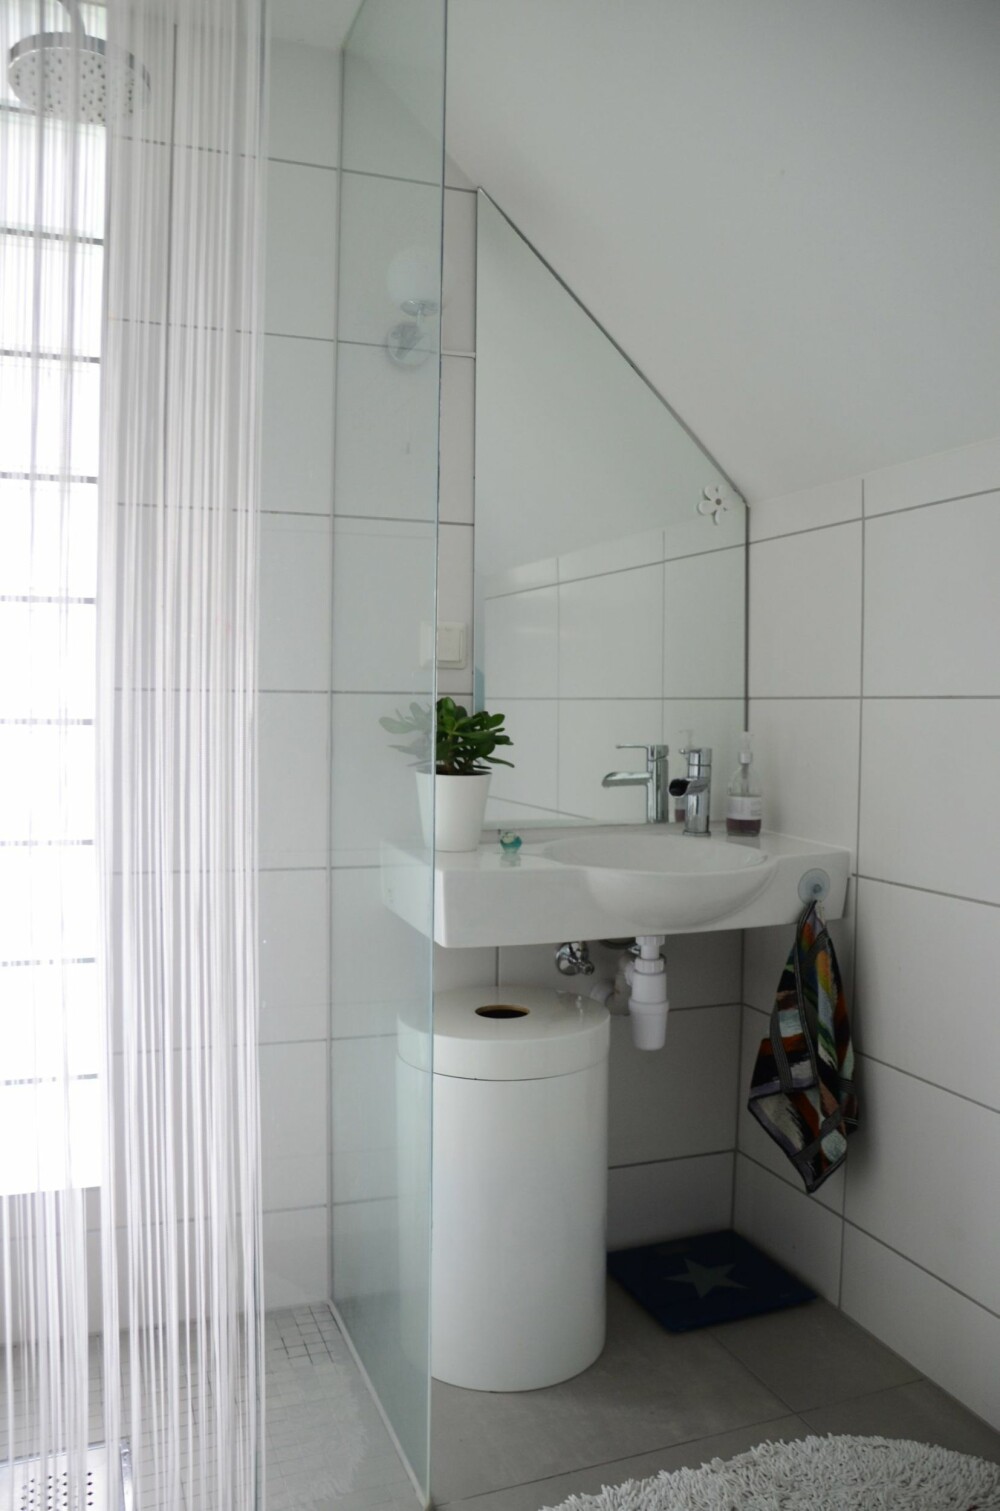 SPESIALTILPASSET: En av løsningene på et lite bad er å få bygget en spesialtilpasset dusjnisje.